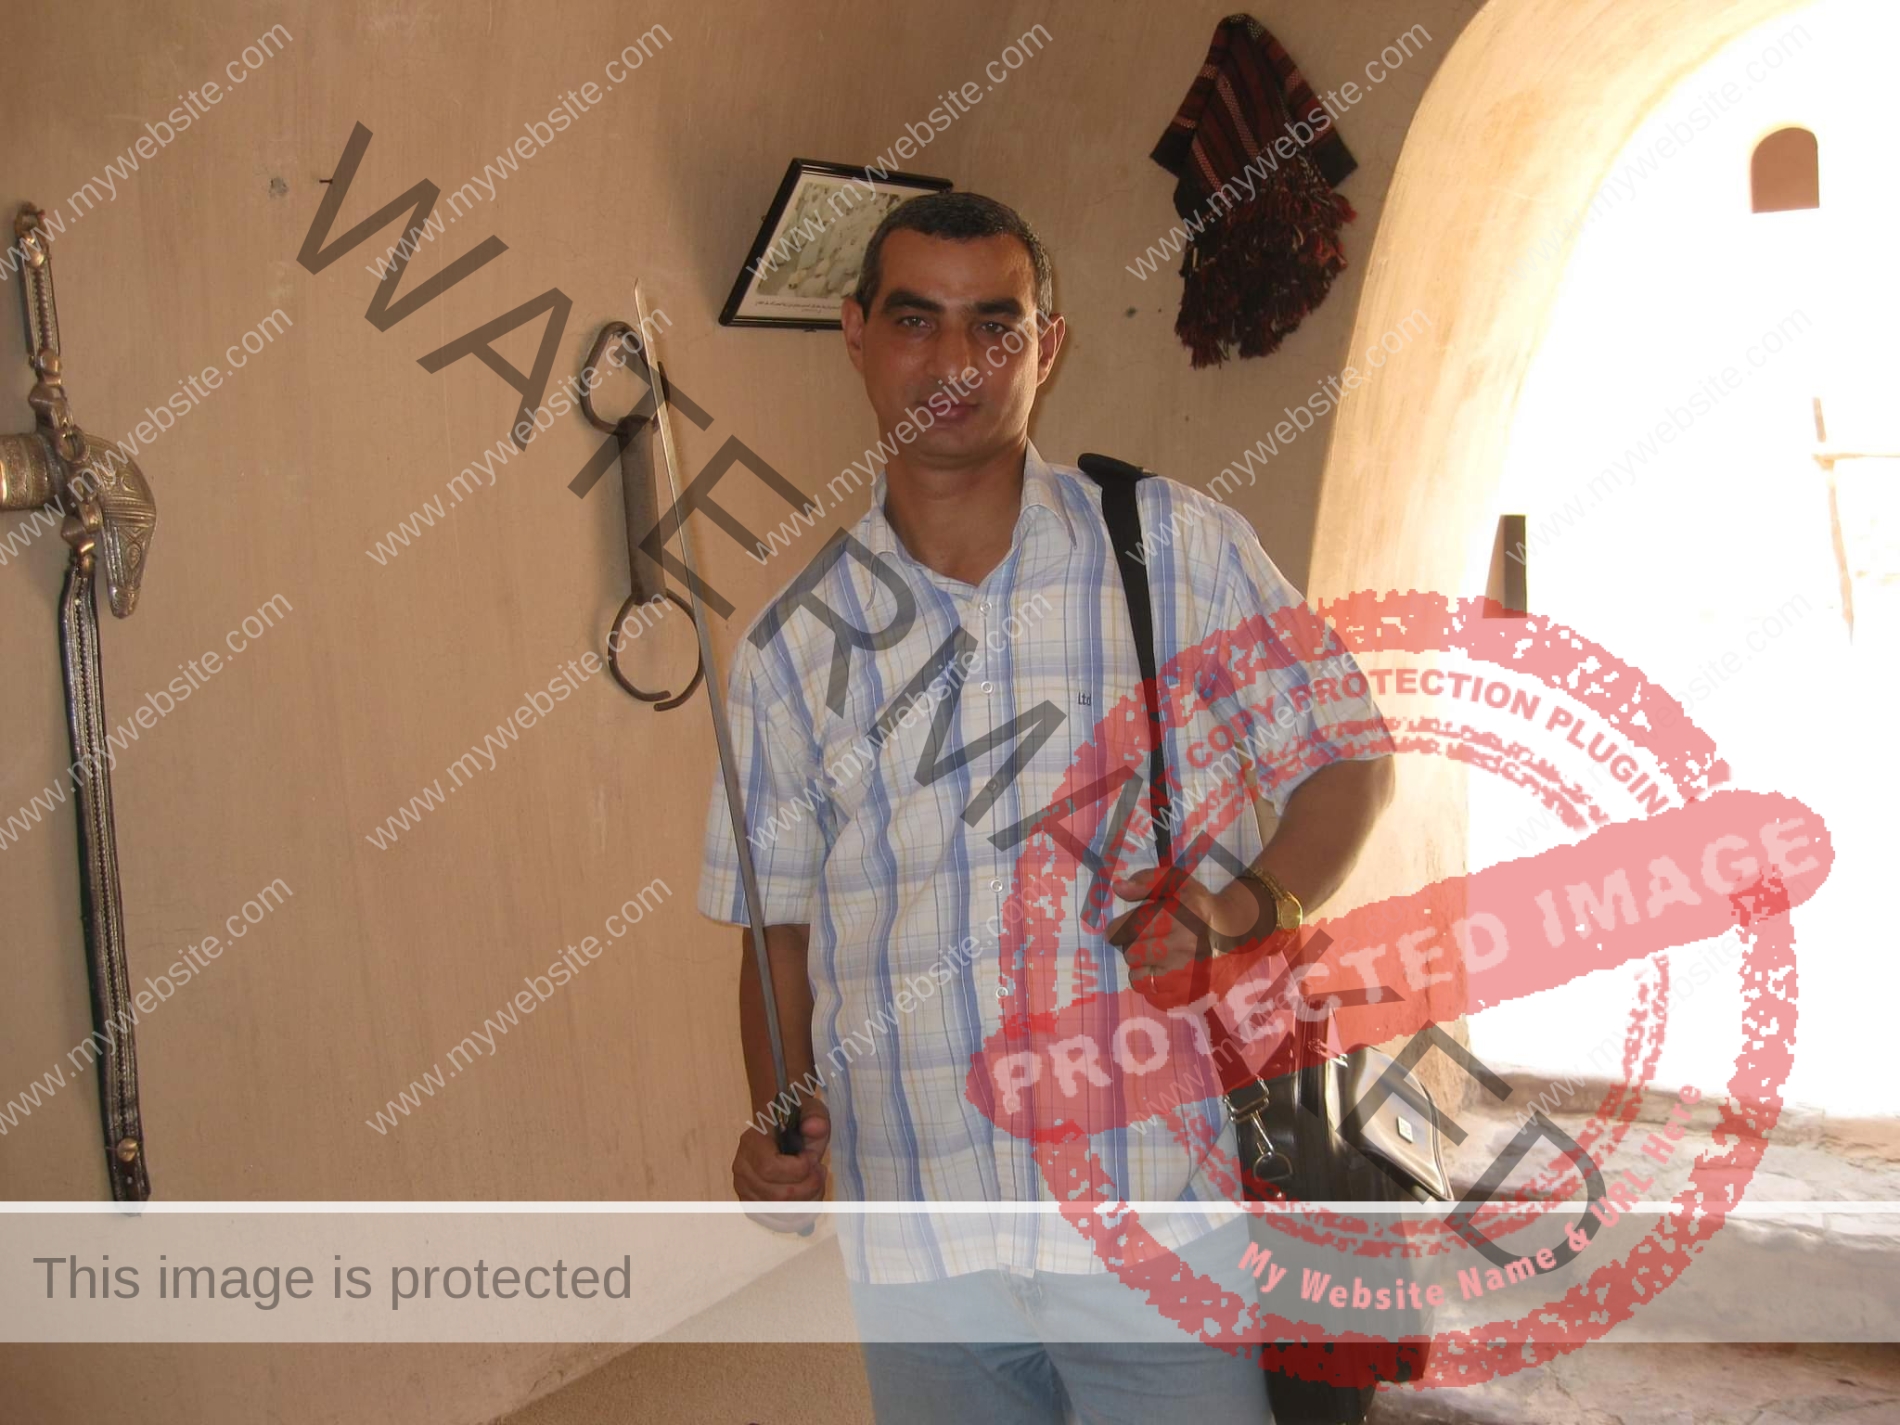 "بالصور" العارف بالله طلعت وجولة صحفية داخل "حصن المنترب" بسلطنة عمان